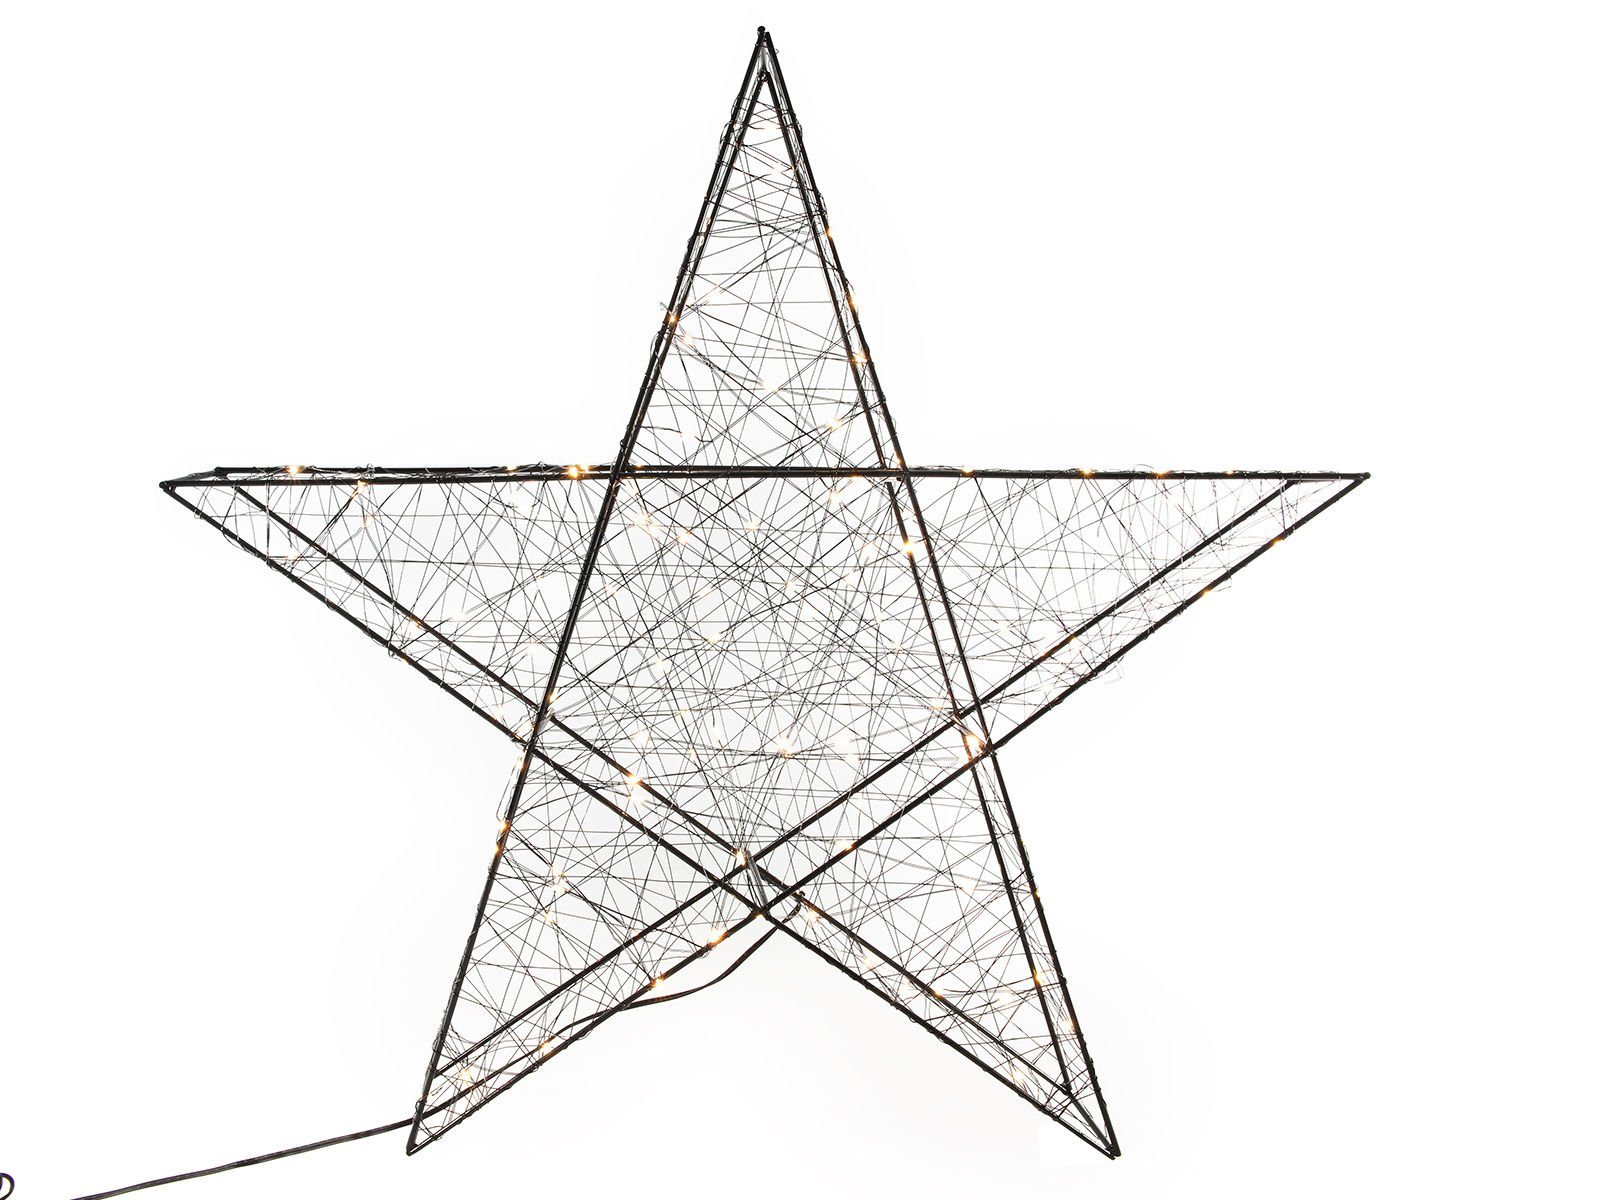 Spetebo LED Stern Stern 120 warmweiße LED - 58 cm - Farbe: schwarz, warmweiß, Metall Stern 120 LED - Deko Weihnachten Advent | Beleuchtete Weihnachtssterne